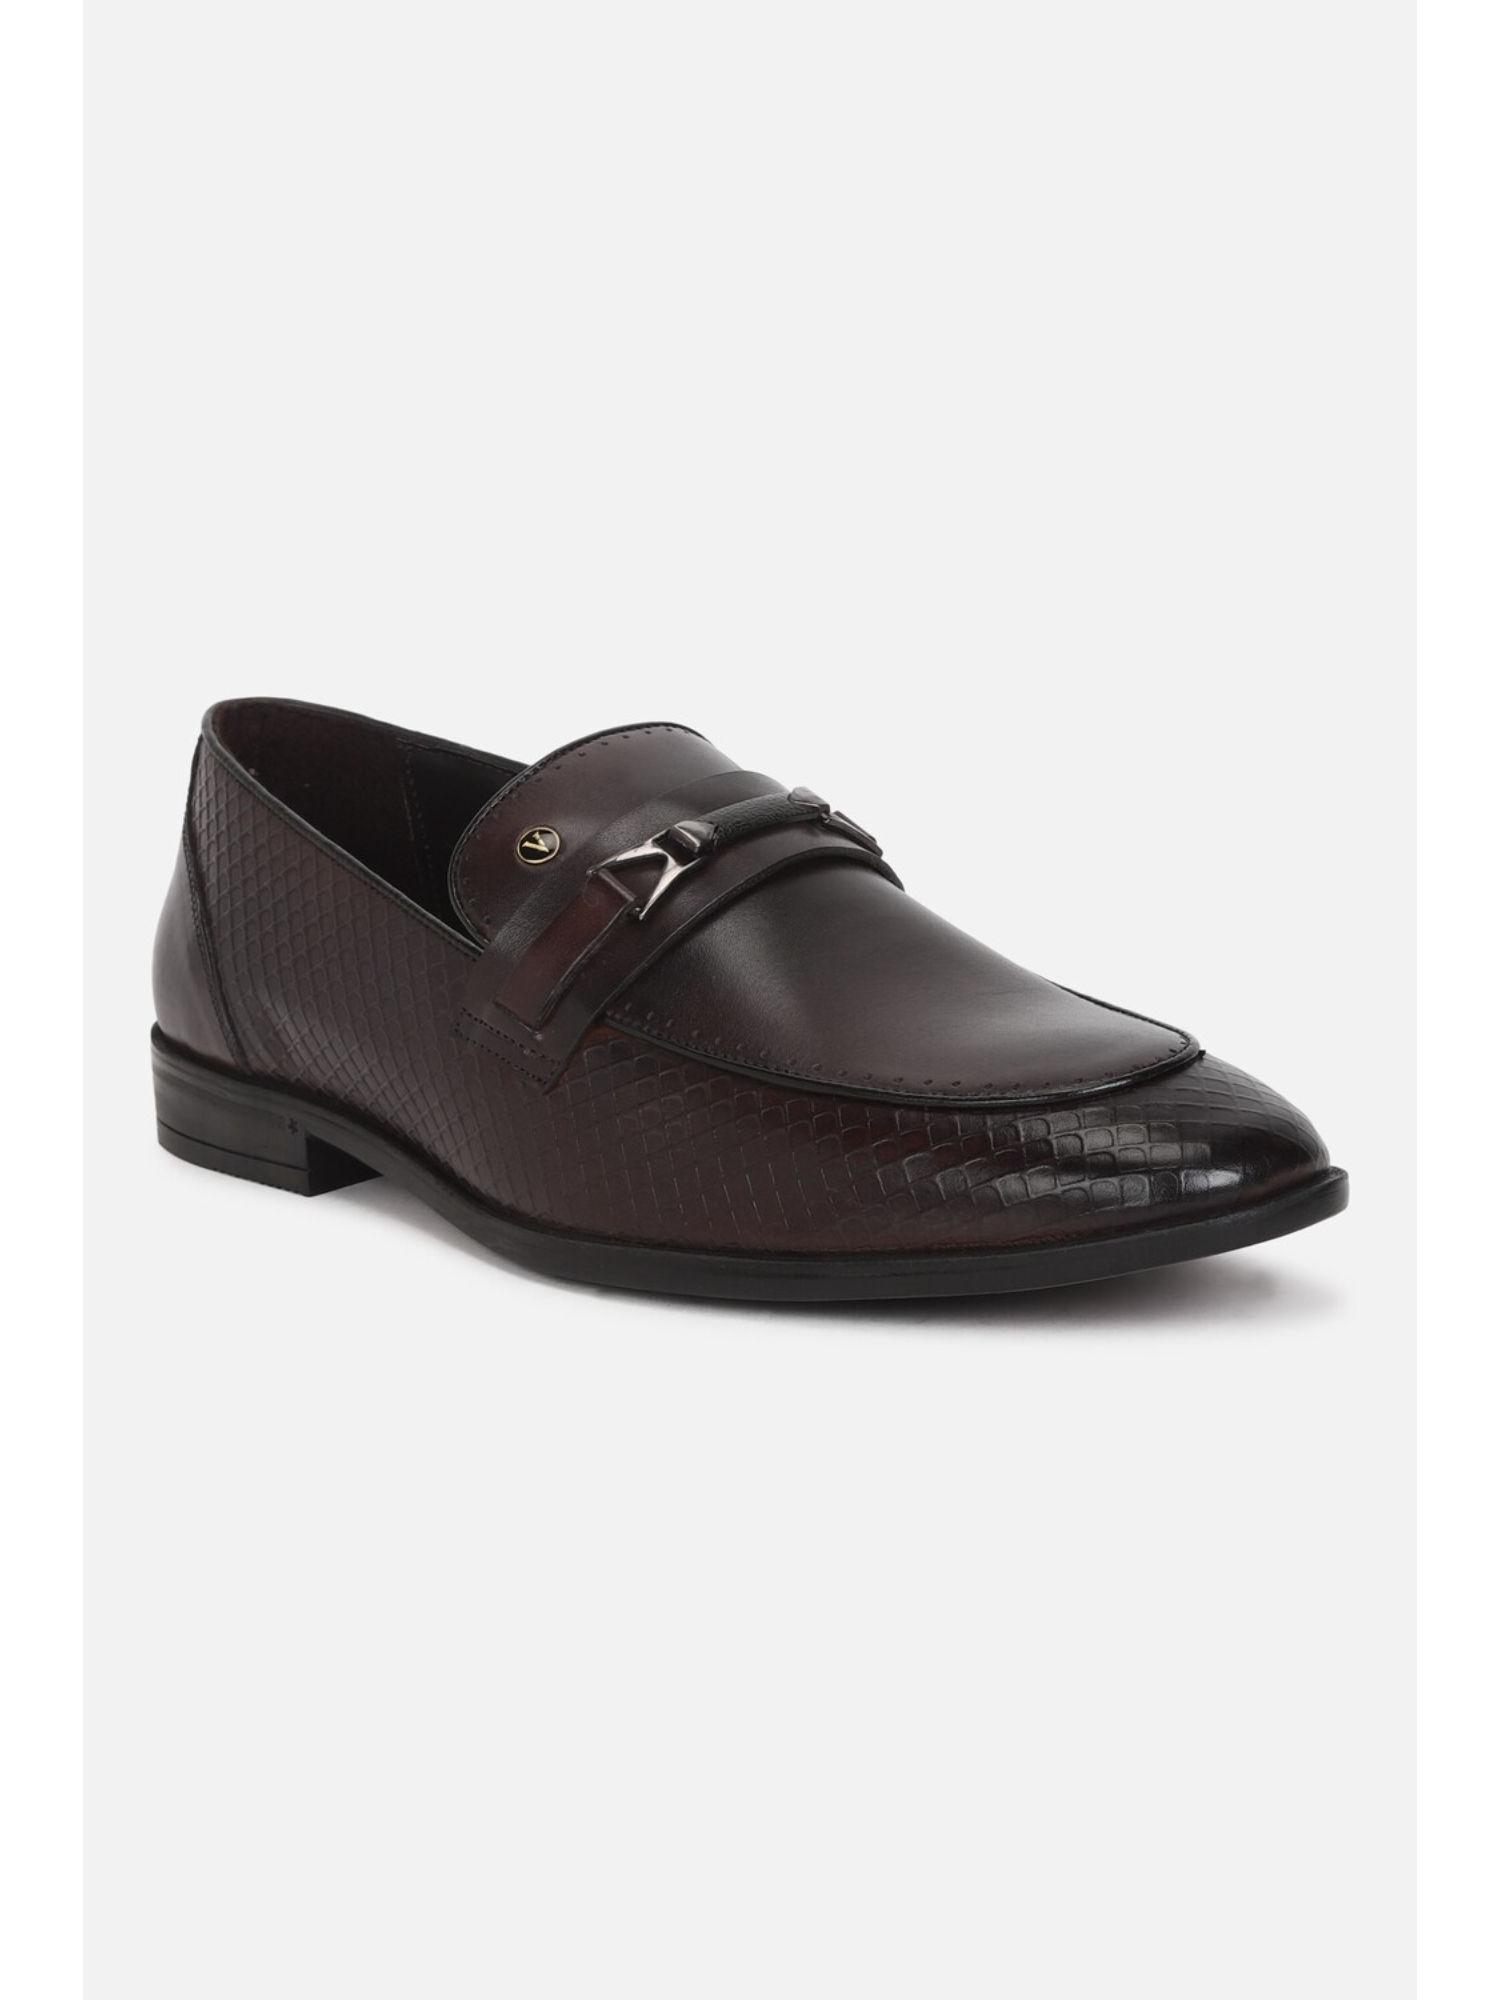 men-brown-slip-ons-loafers